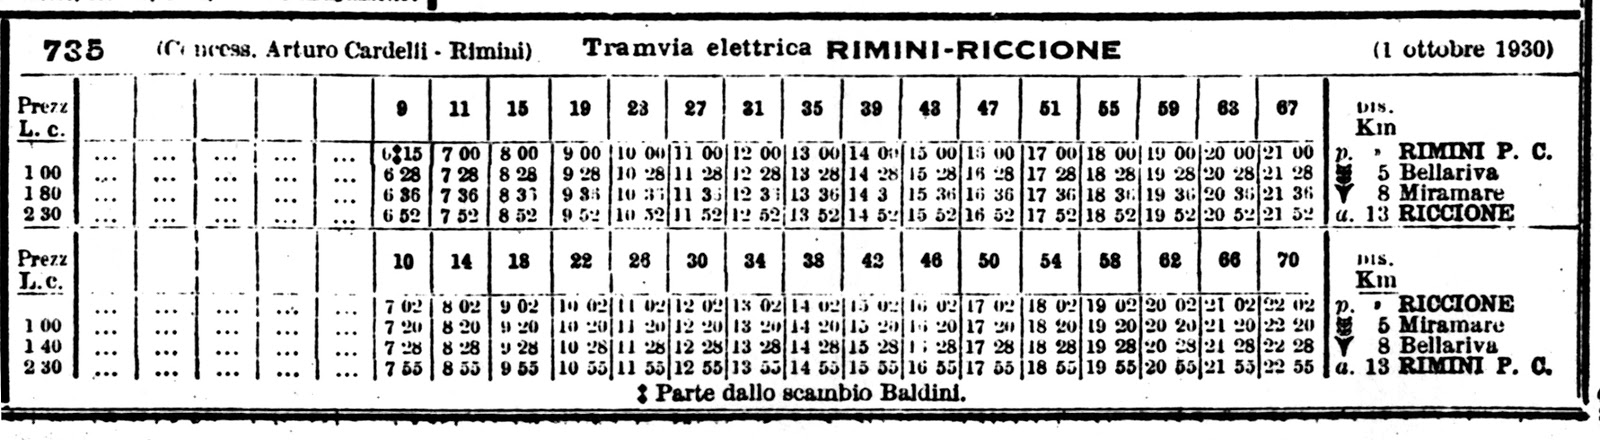 Tram Rimini-Riccione